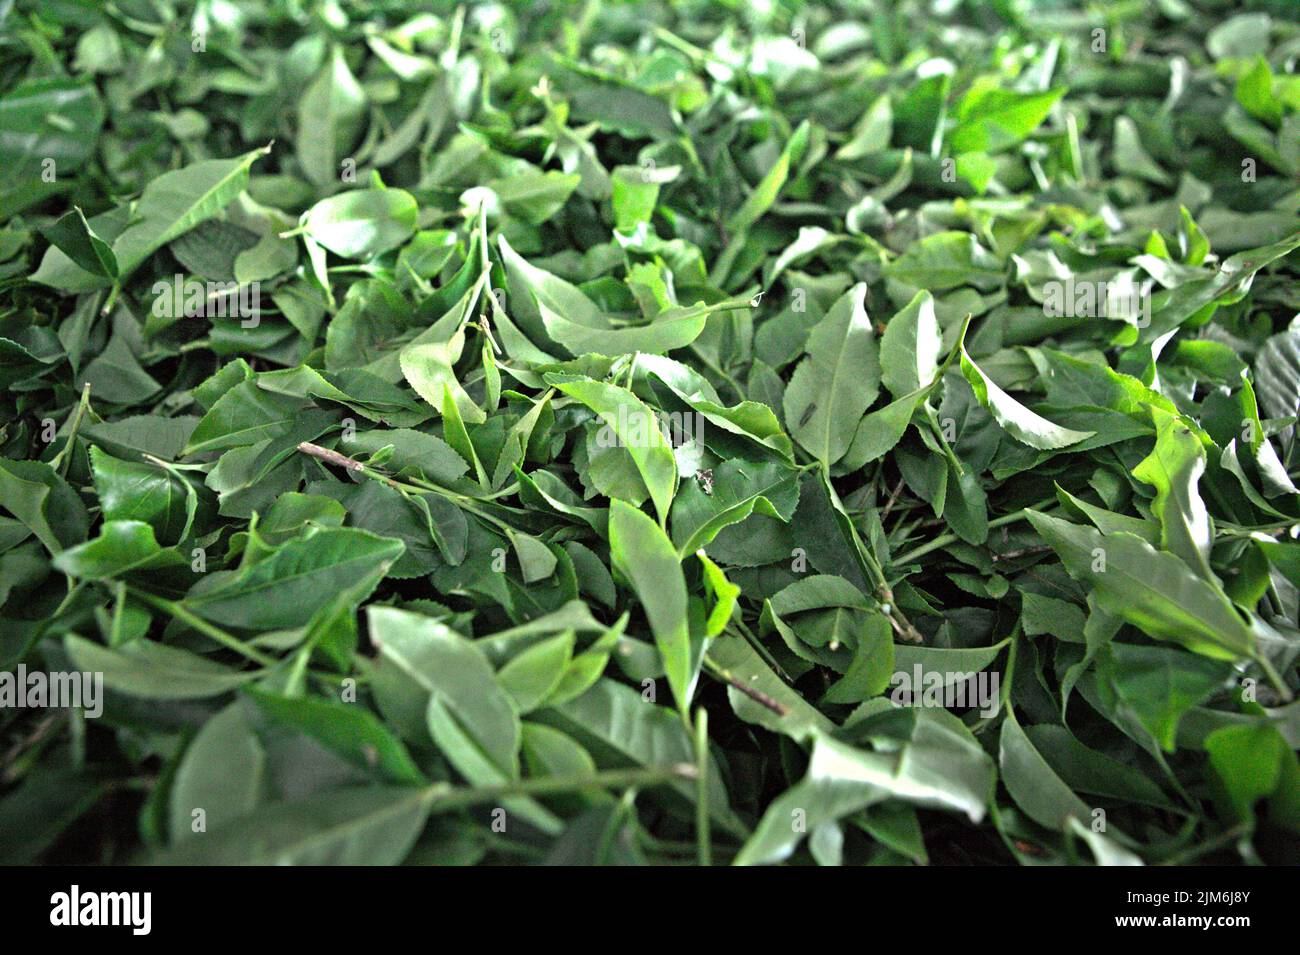 Foglie di tè raccolte che sono pronte per il processo di essiccazione presso la fabbrica di tè Sabah, l'impianto di lavorazione per i materiali raccolti dalla fattoria di tè biologico, una parte del giardino del tè Sabah in Sabah, Malesia. Foto Stock